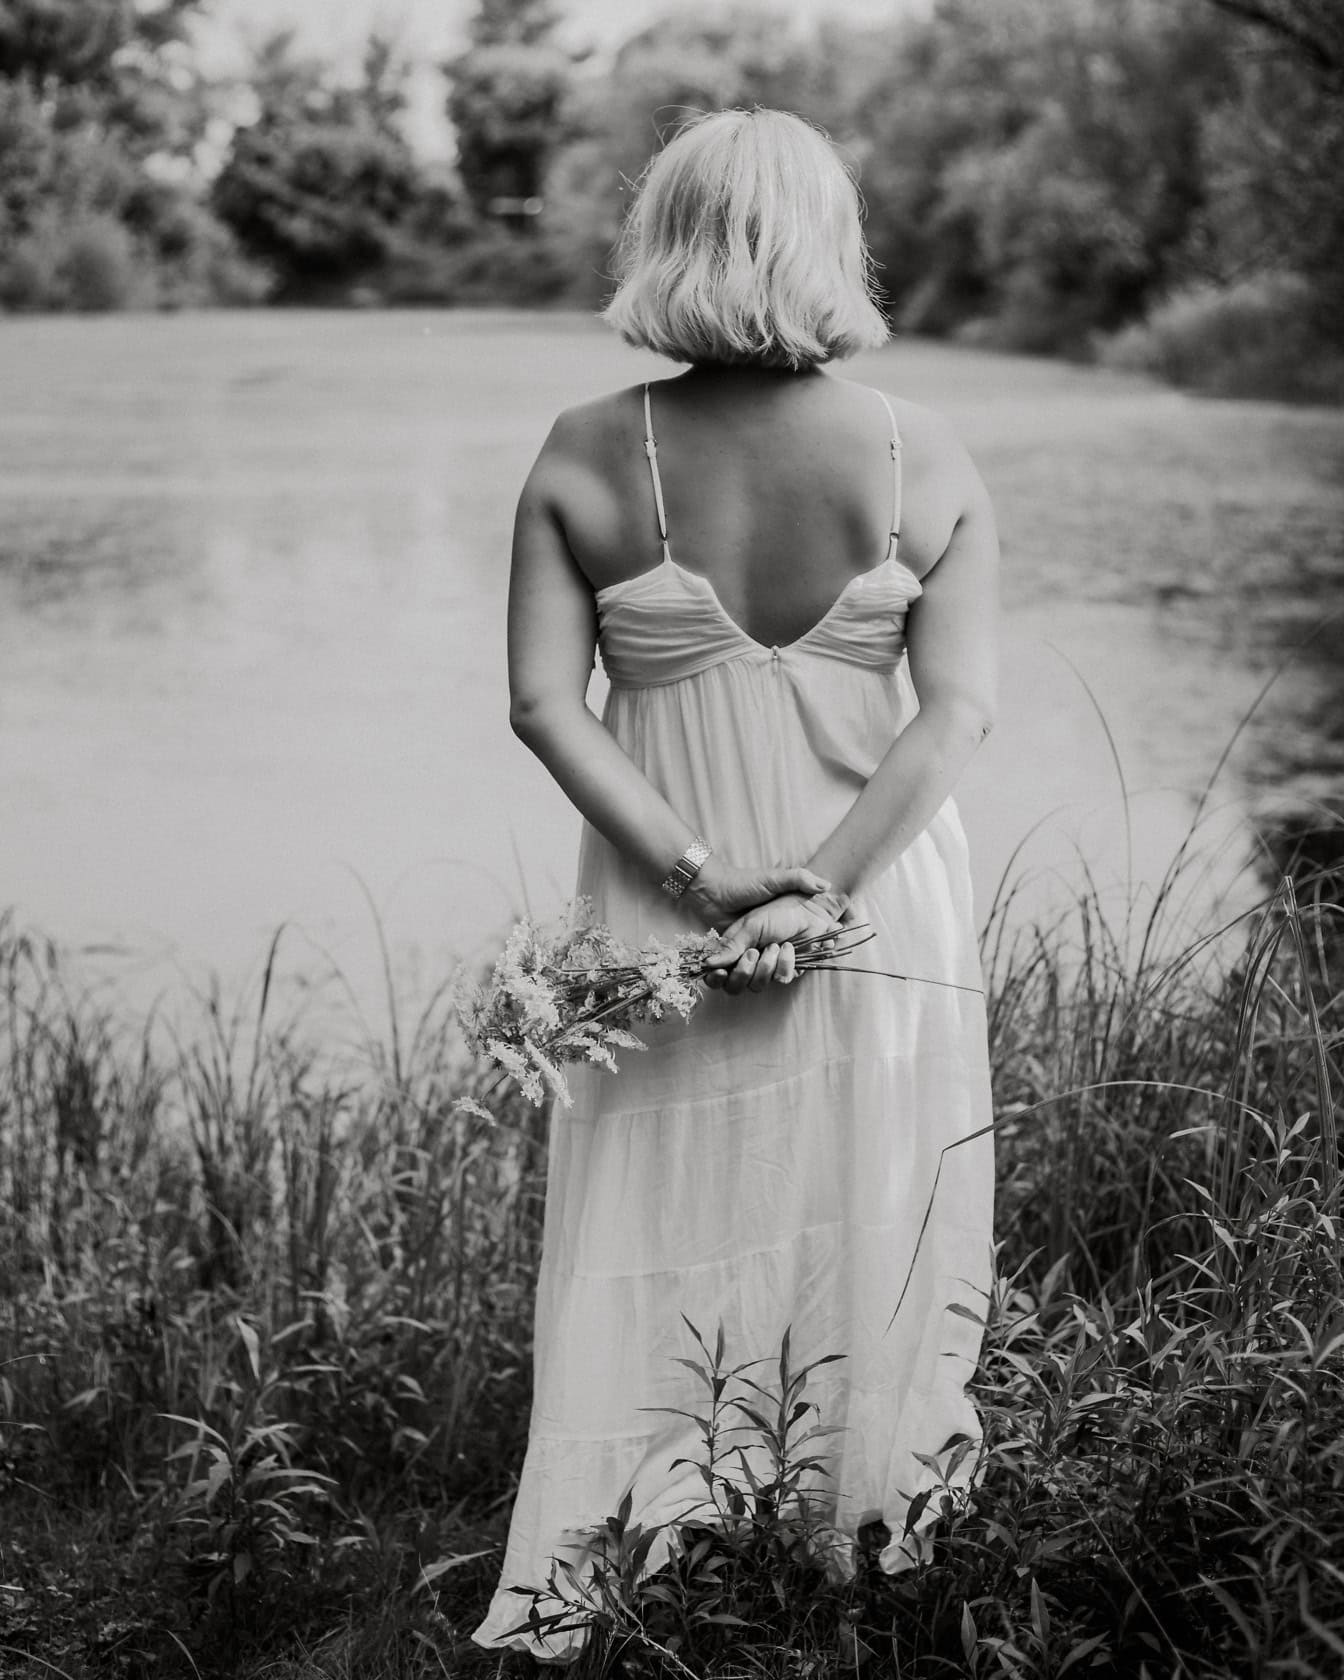 Chân dung đen trắng của cô dâu quay lưng trong chiếc váy trắng không lưng cầm hoa